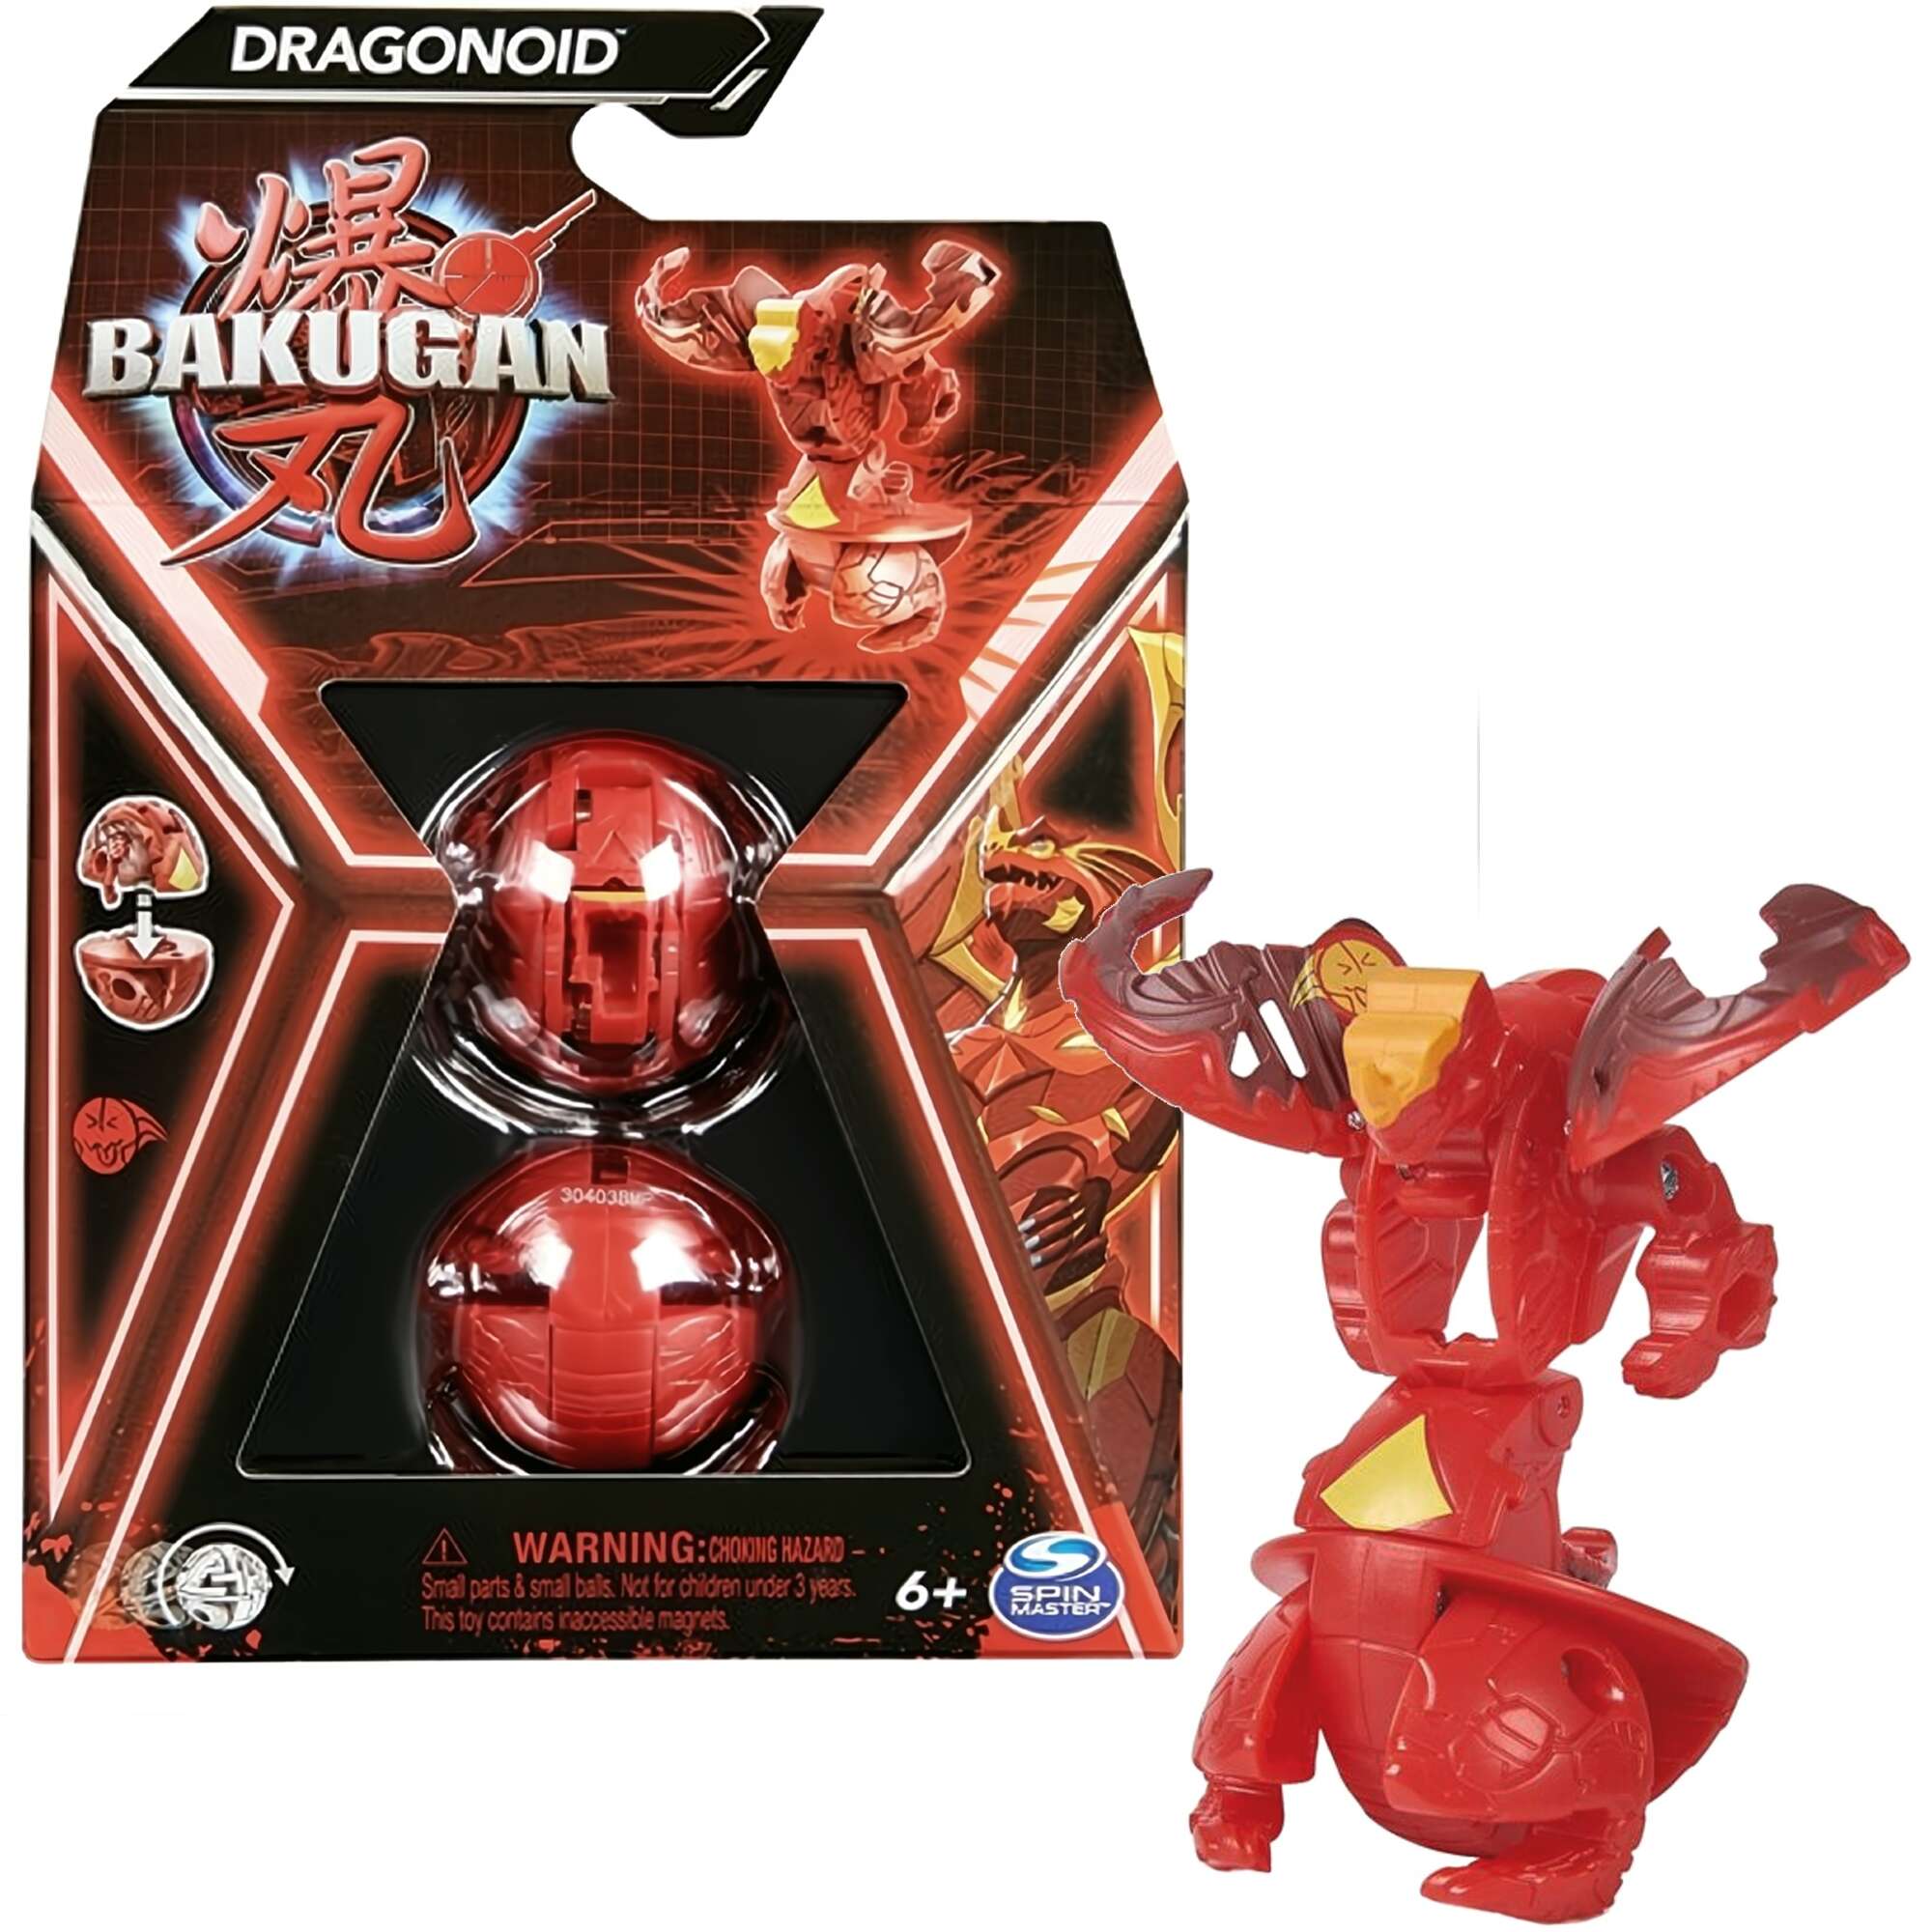 Bakugan Dragonoid Czerwona figurka bitewna transformujca + karty